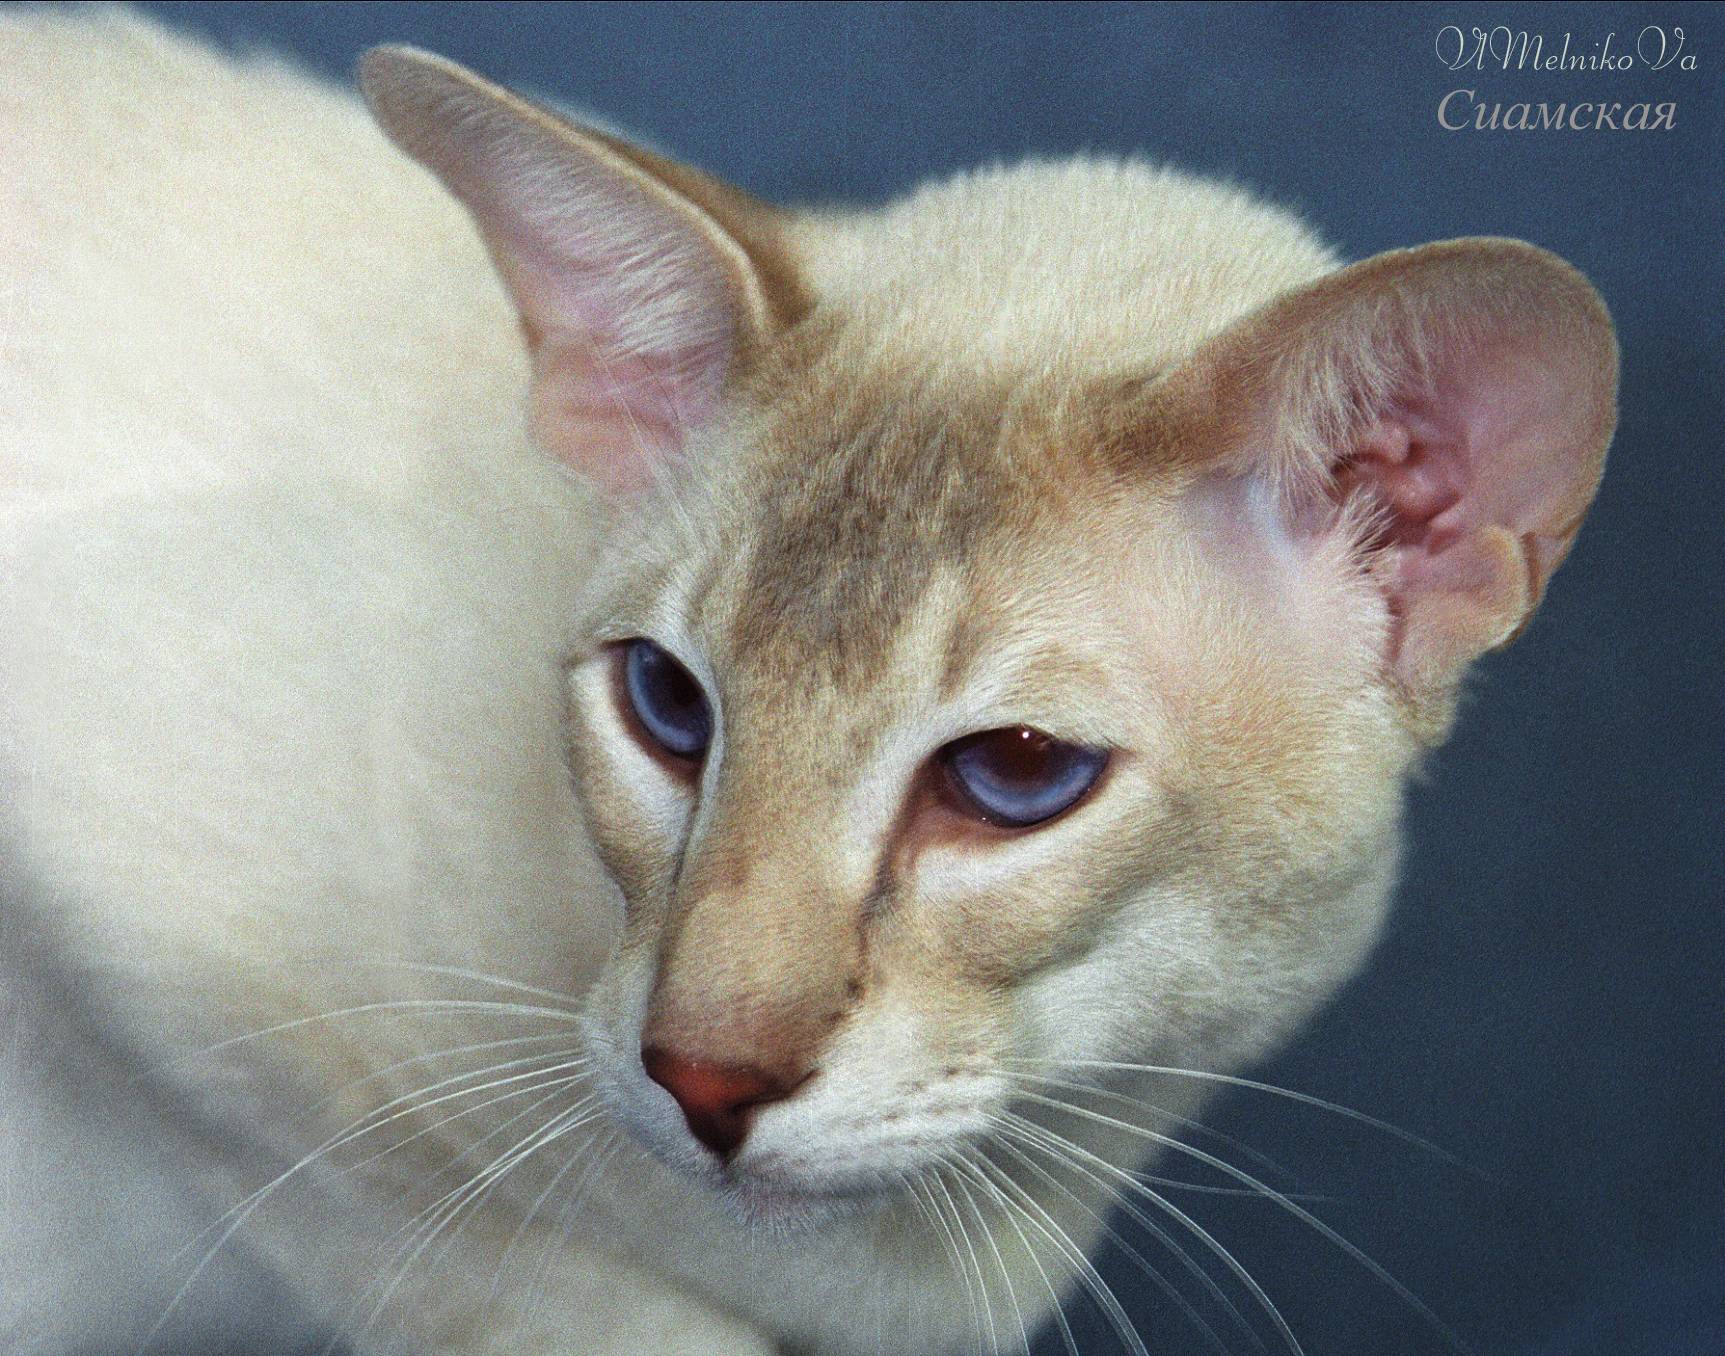 Цейлонская кошка: описание породы, фото и видео материалы, отзывы о породе